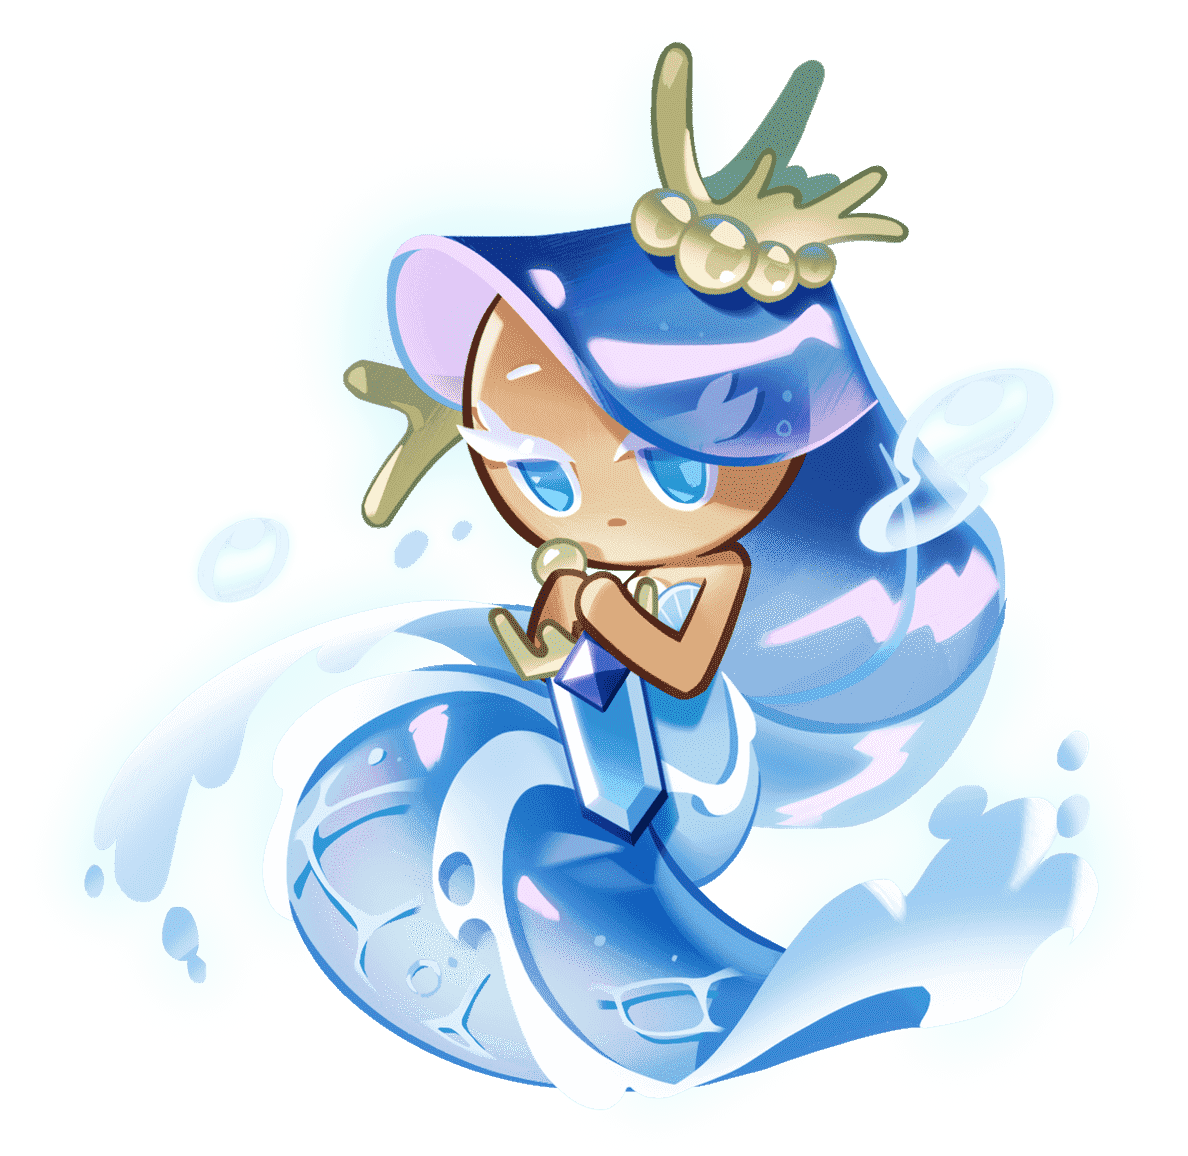 Le biscuit de la fée de la mer tient une épée semblable à un bijou.  sa robe ressemble à une vague dans l'océan. 